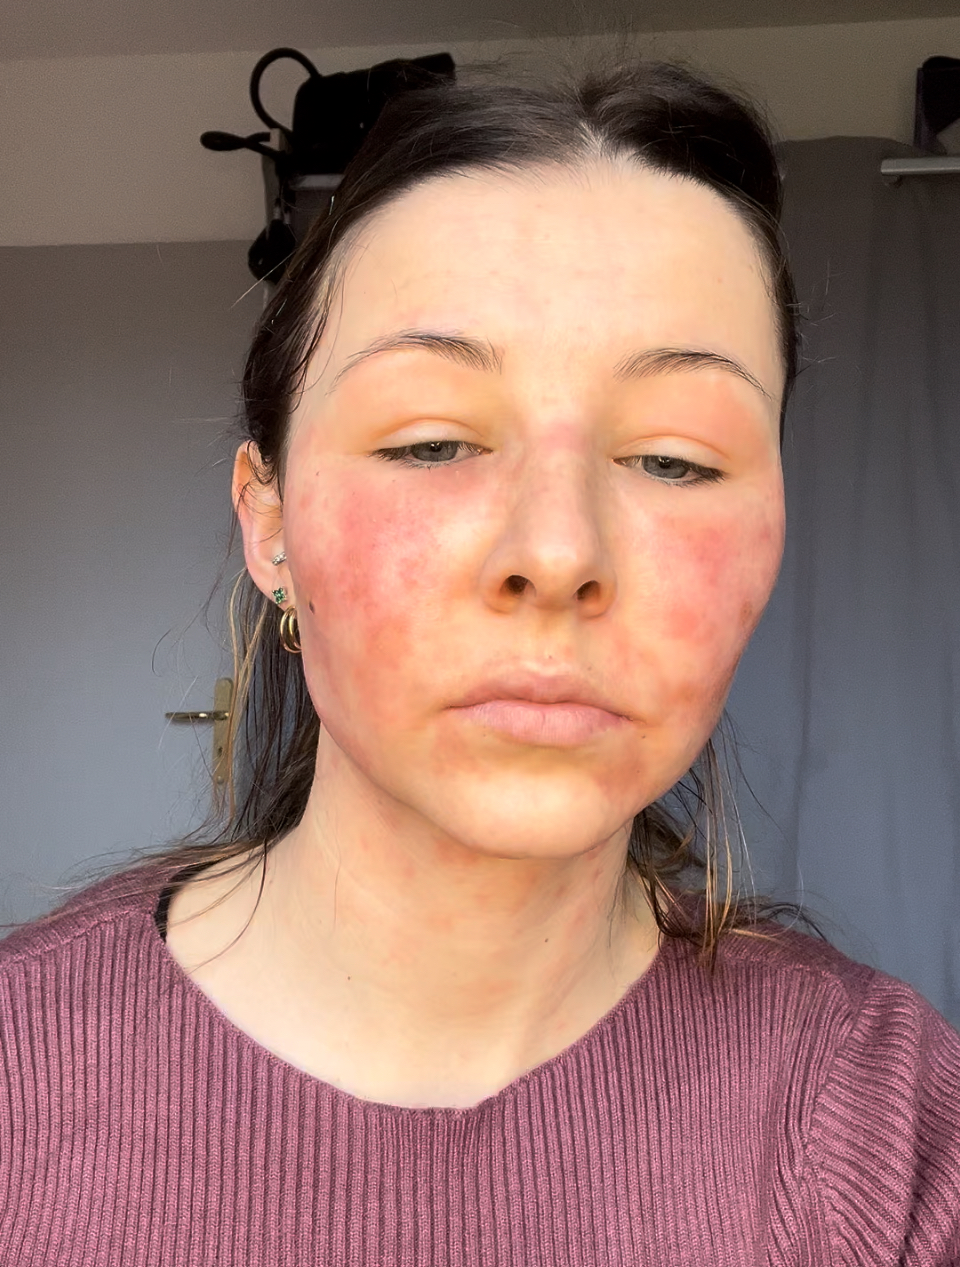 La créatrice de contenu Emma Artwest affirme avoir été brûlée après avoir utilisé des produits cosmétiques. /Emma Artwest